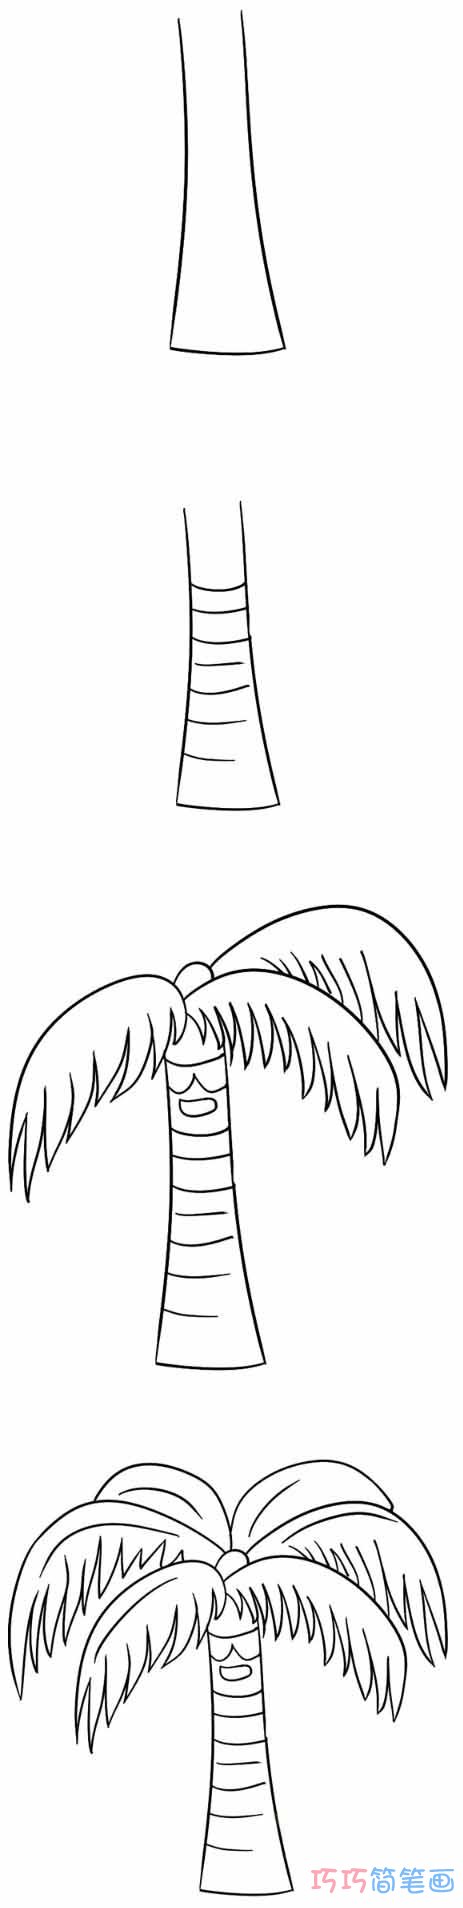 椰子树怎么画好看可爱 带步骤图椰子树简笔画图片